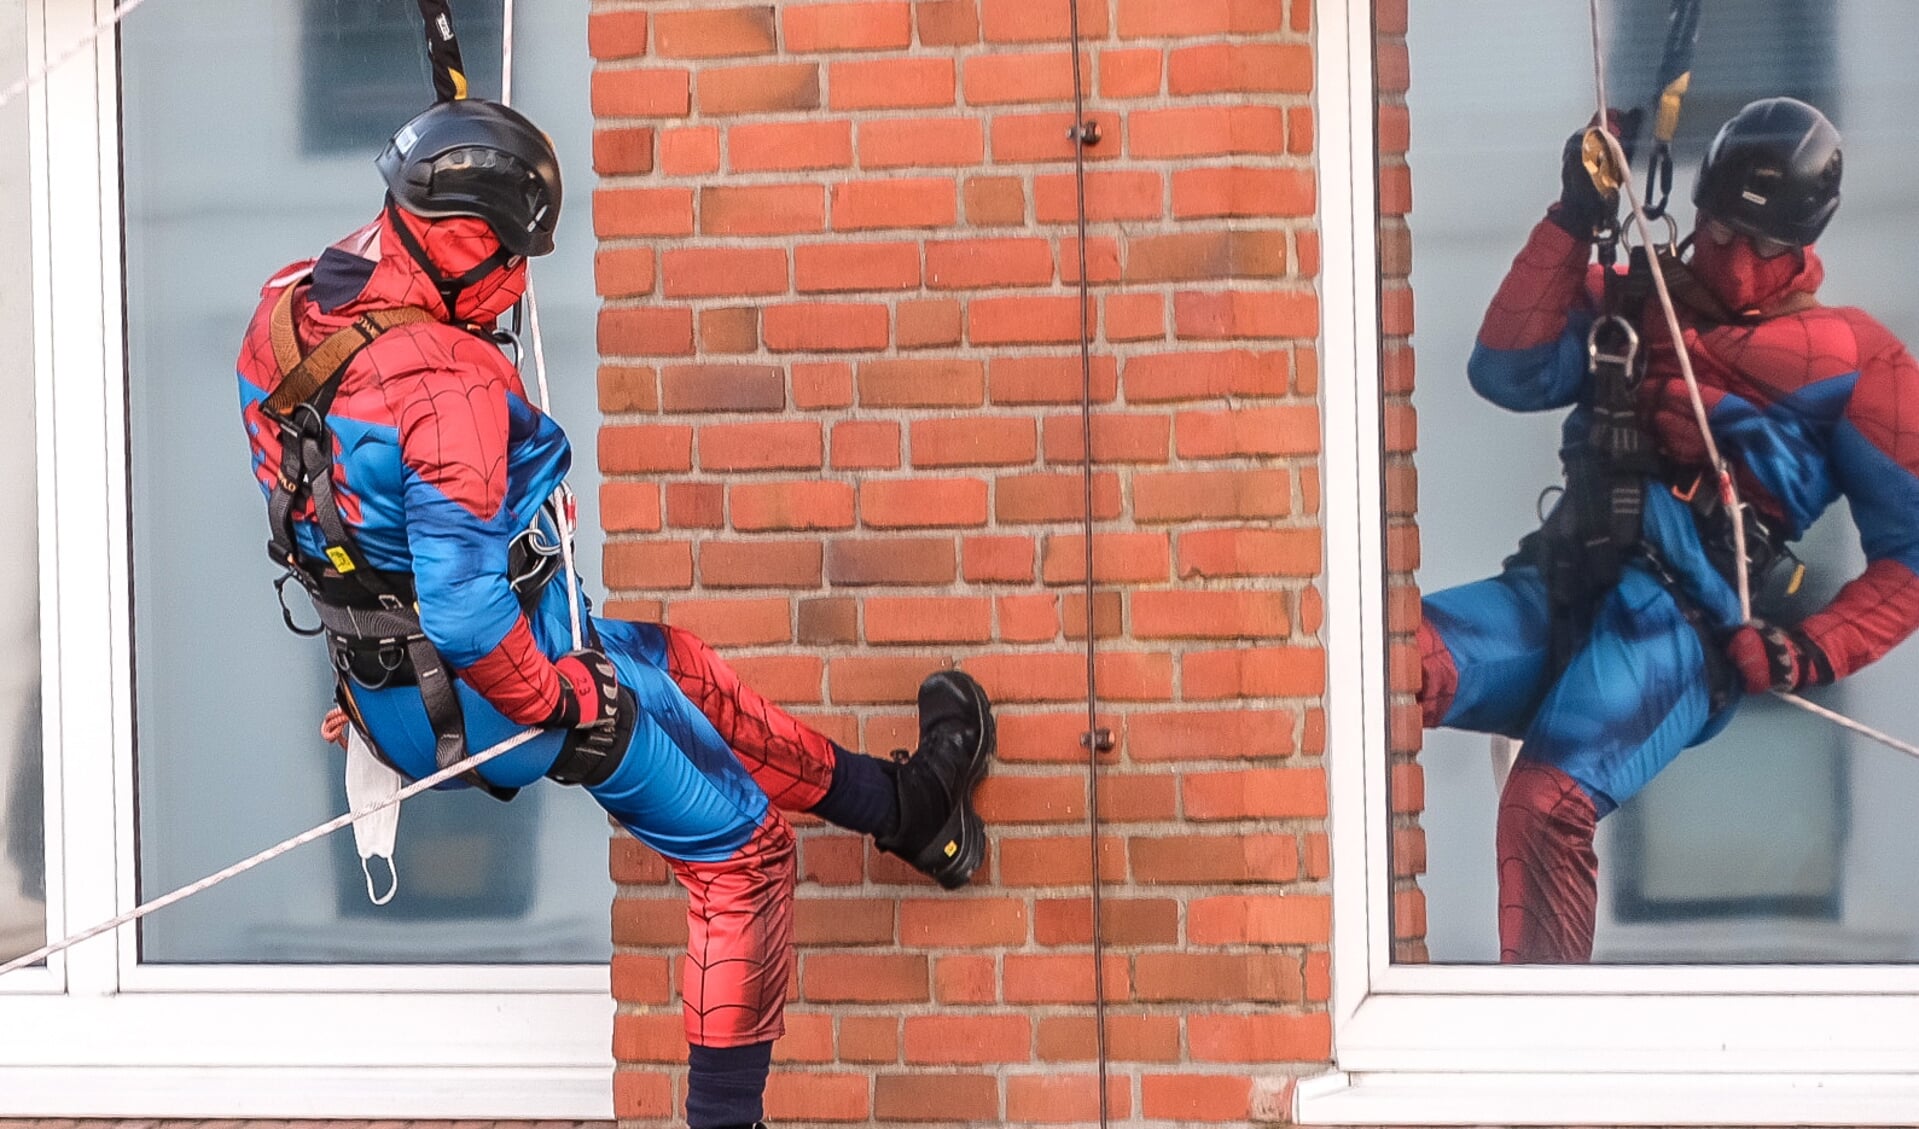 Spiderman var blandt de superhelte, der klatrede ind ad vinduet for at aflevere gaver til de syge børn på hospitalet.